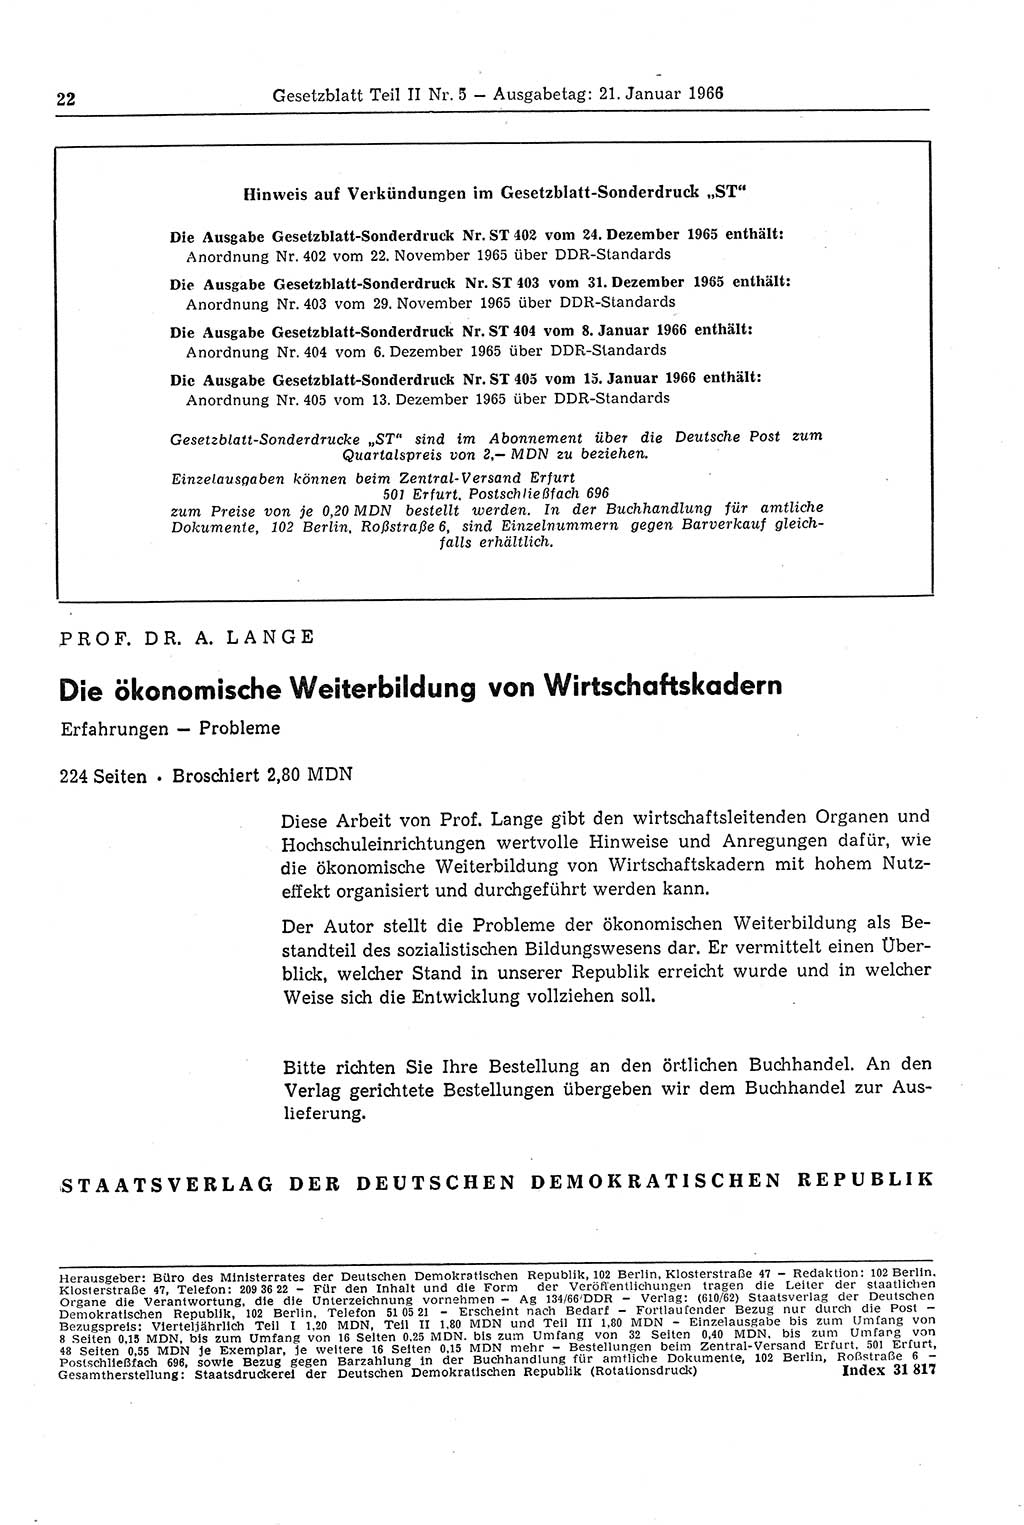 Gesetzblatt (GBl.) der Deutschen Demokratischen Republik (DDR) Teil ⅠⅠ 1966, Seite 22 (GBl. DDR ⅠⅠ 1966, S. 22)